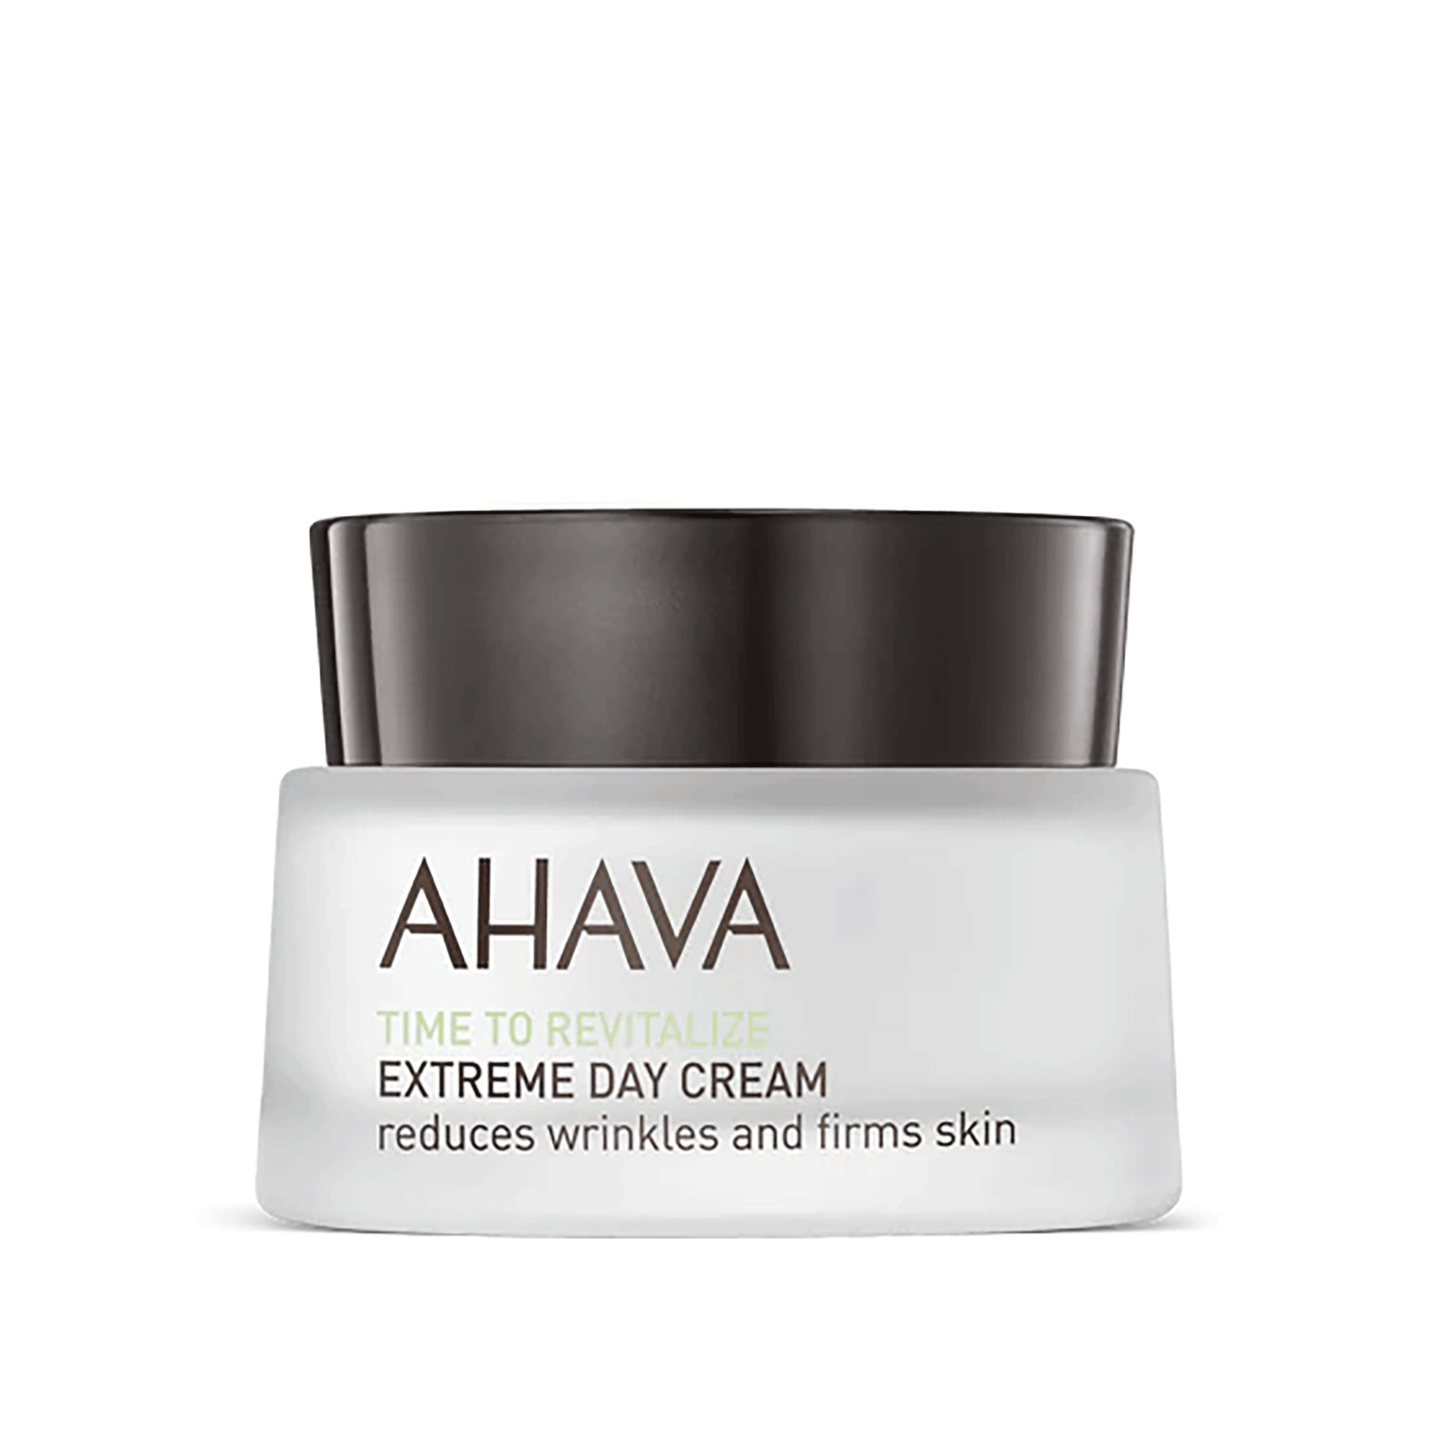 Ahava Extreme Day Cream